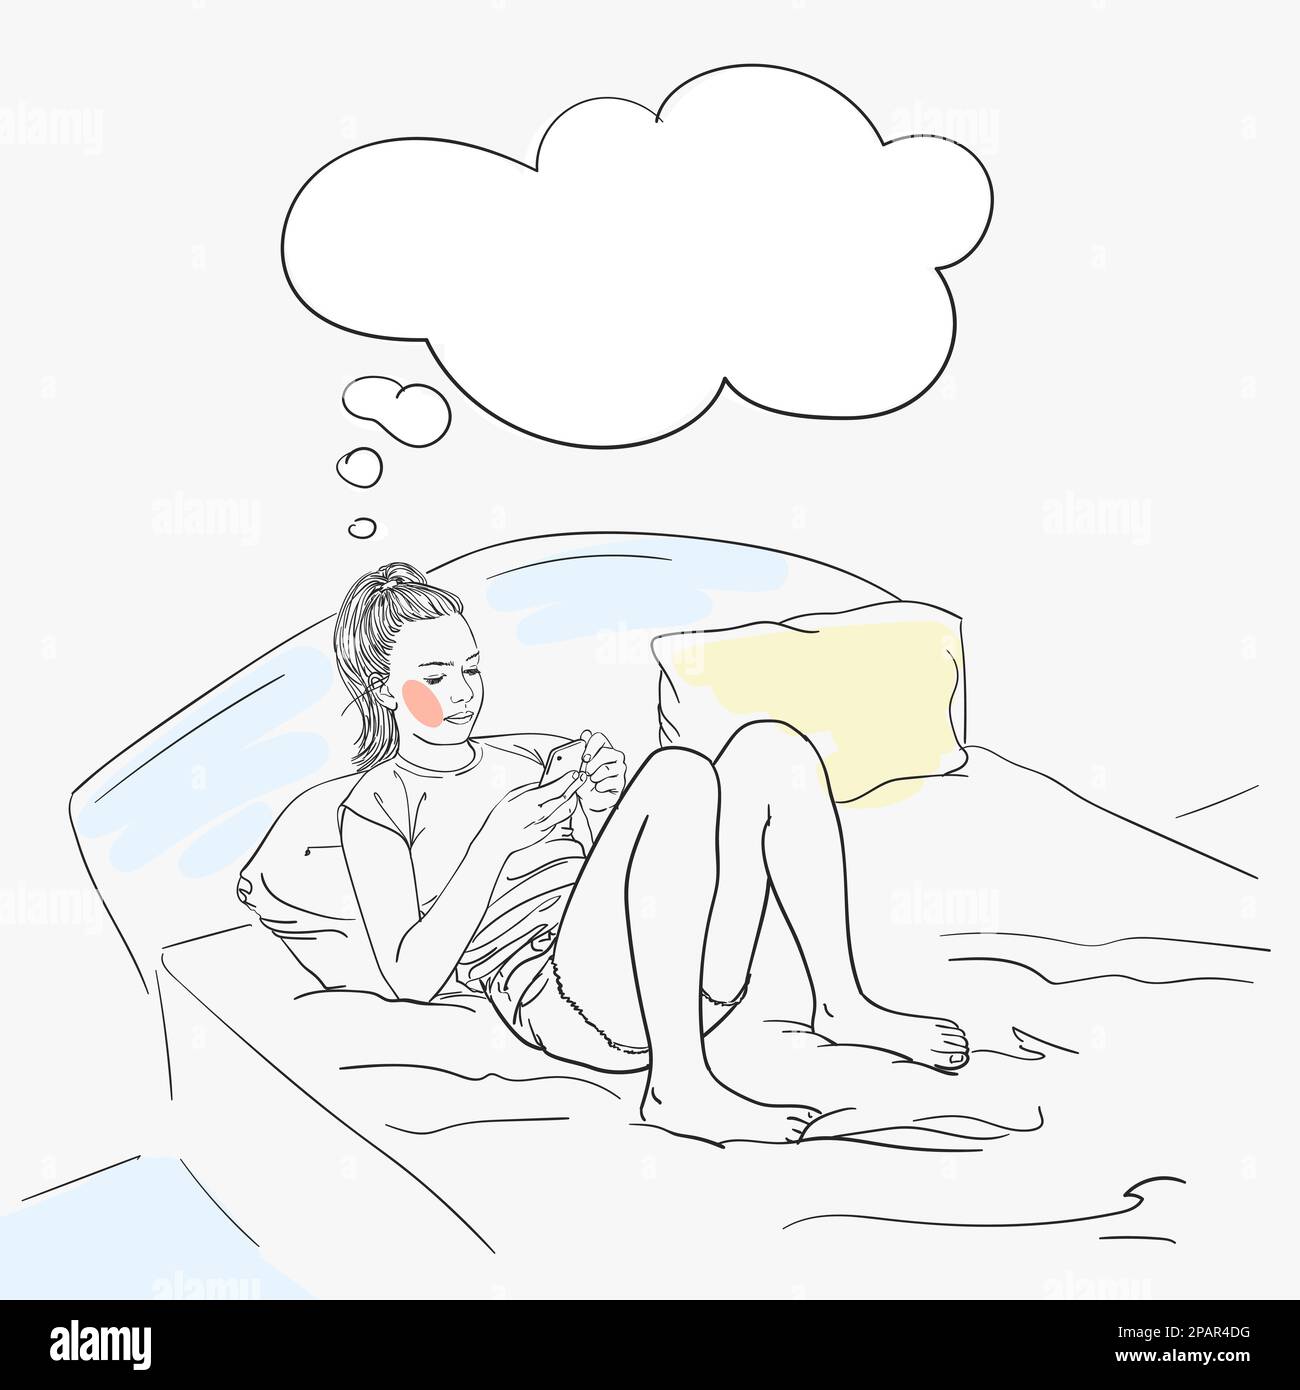 Das Mädchen liegt mit dem Smartphone im Bett und träumt, Gedankenblase über ihrem Kopf. Vektorskizze, handgezeichnete Illustration Stock Vektor